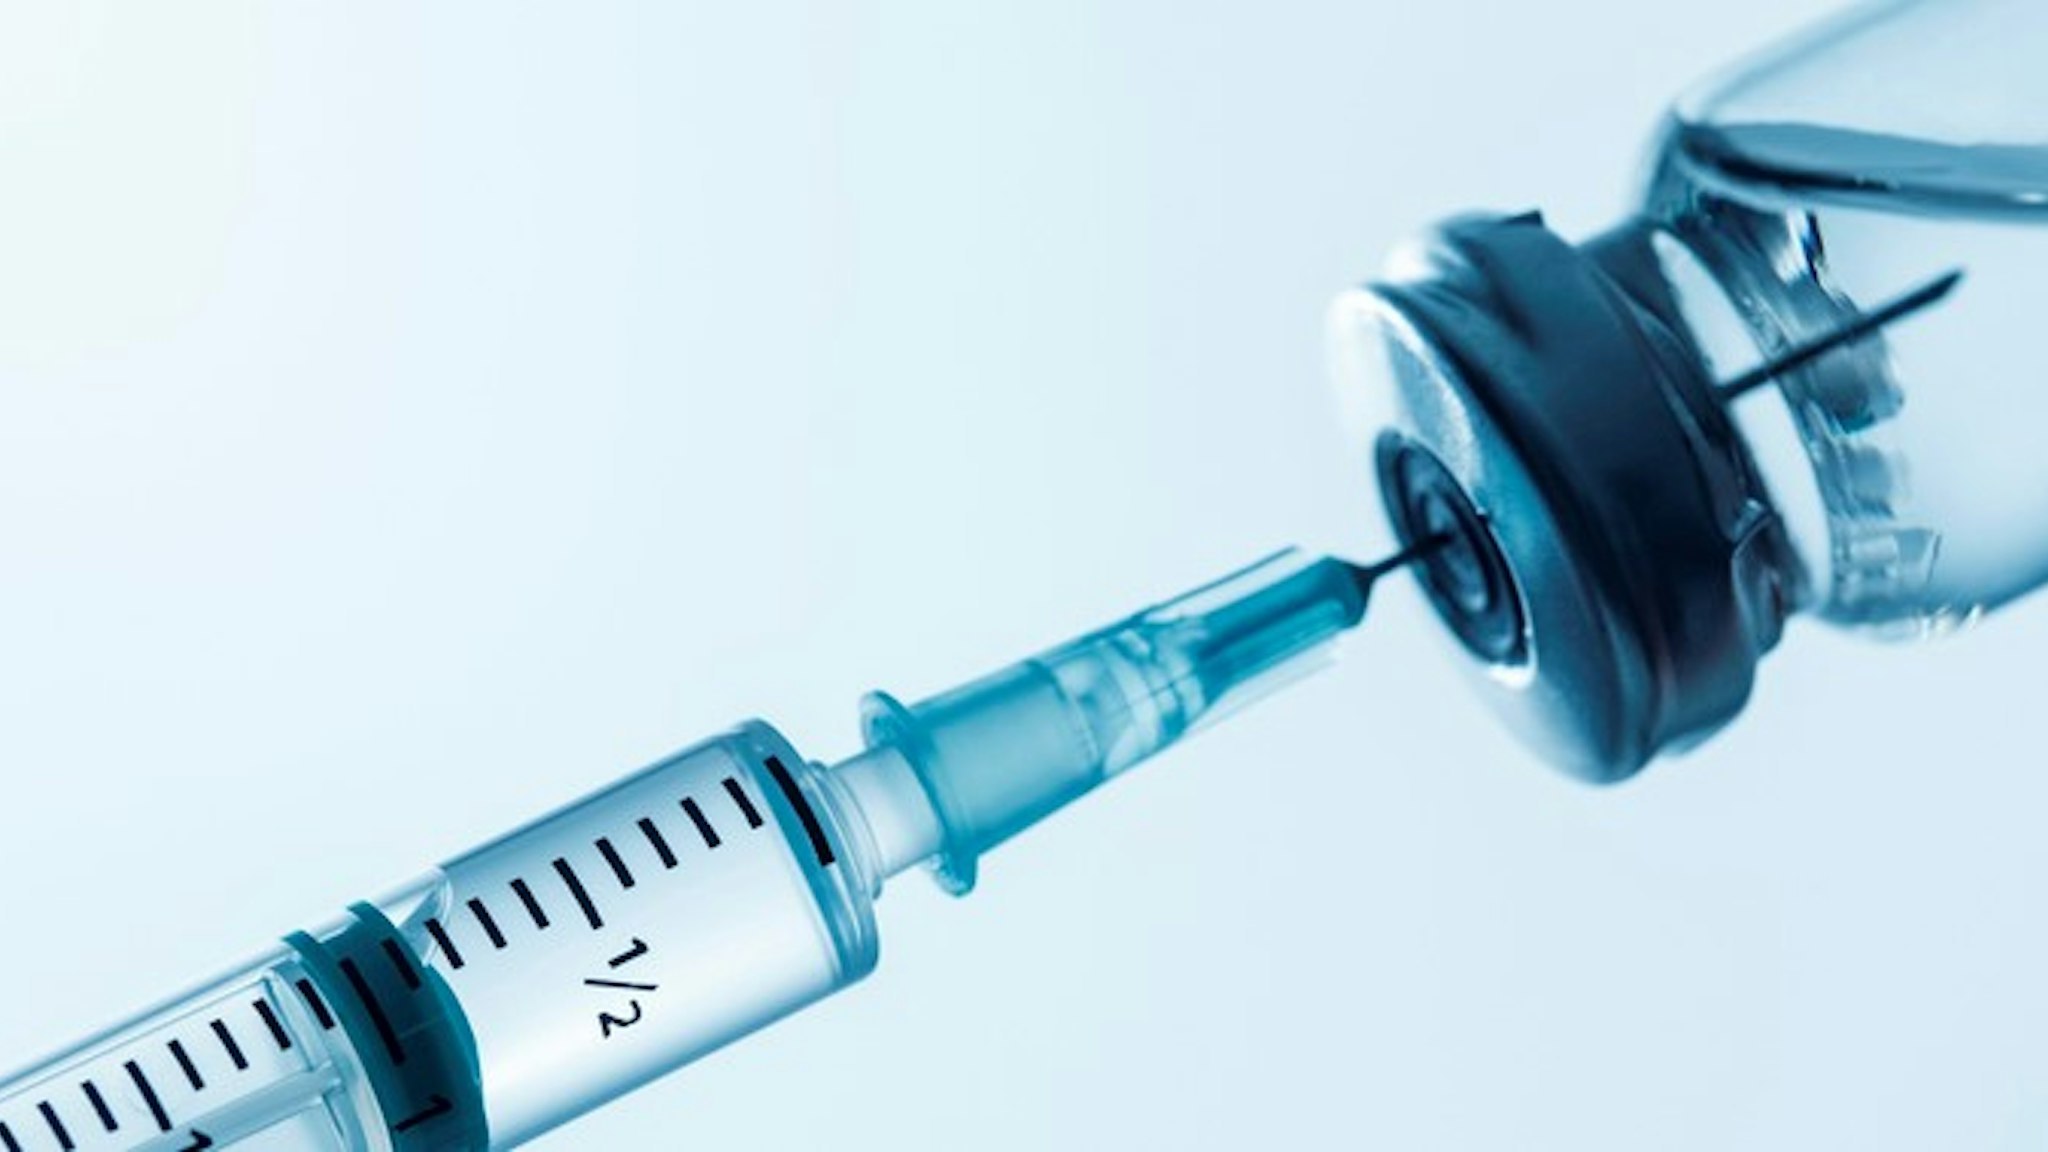 Syringe being filled